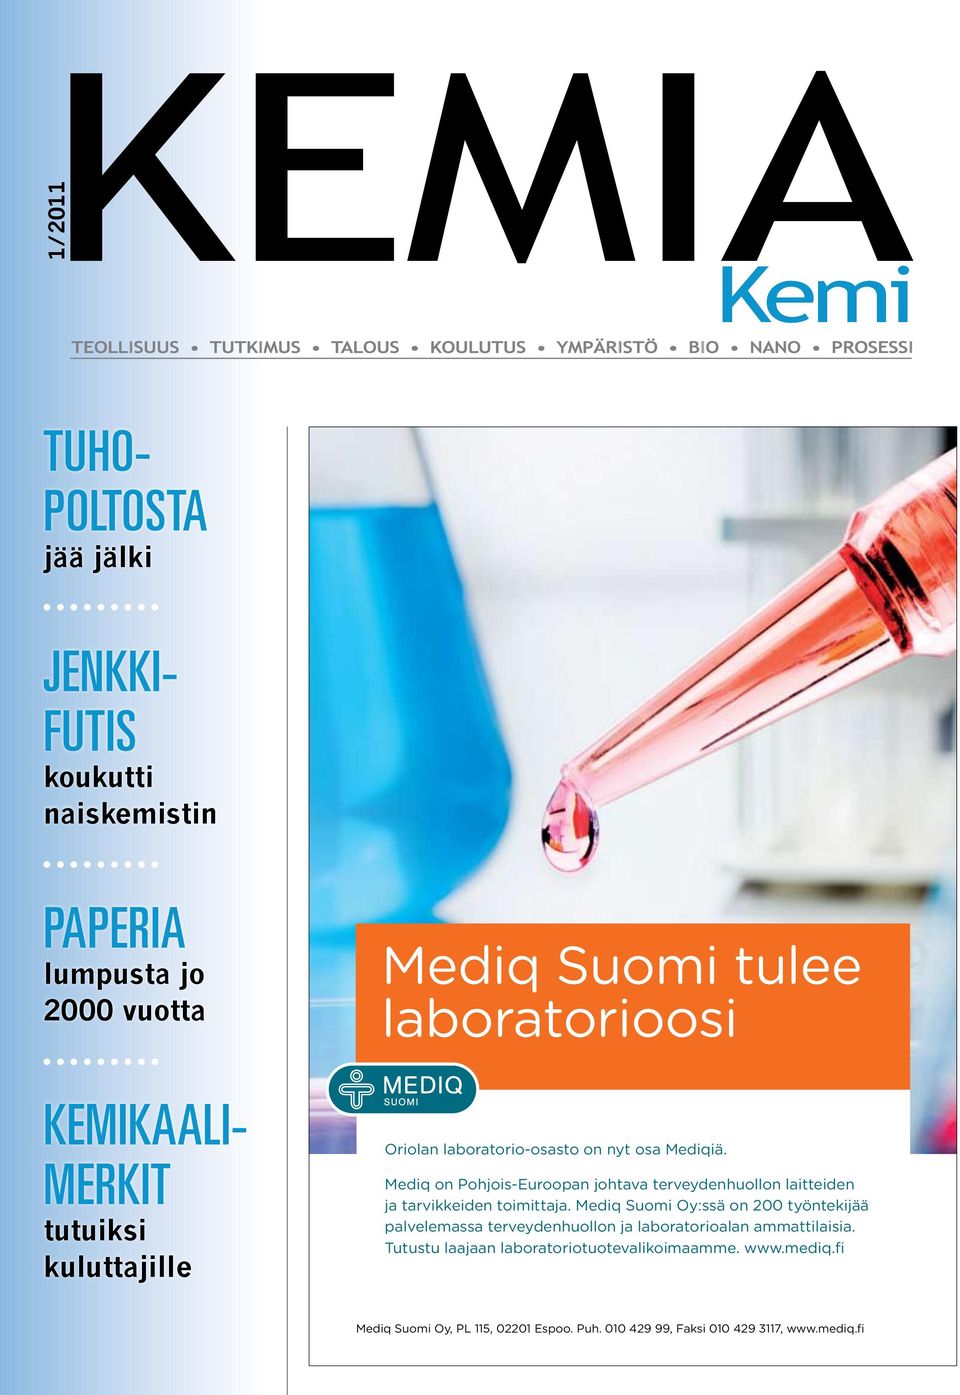 Mediq on Pohjois-Euroopan johtava terveydenhuollon laitteiden ja tarvikkeiden toimittaja.